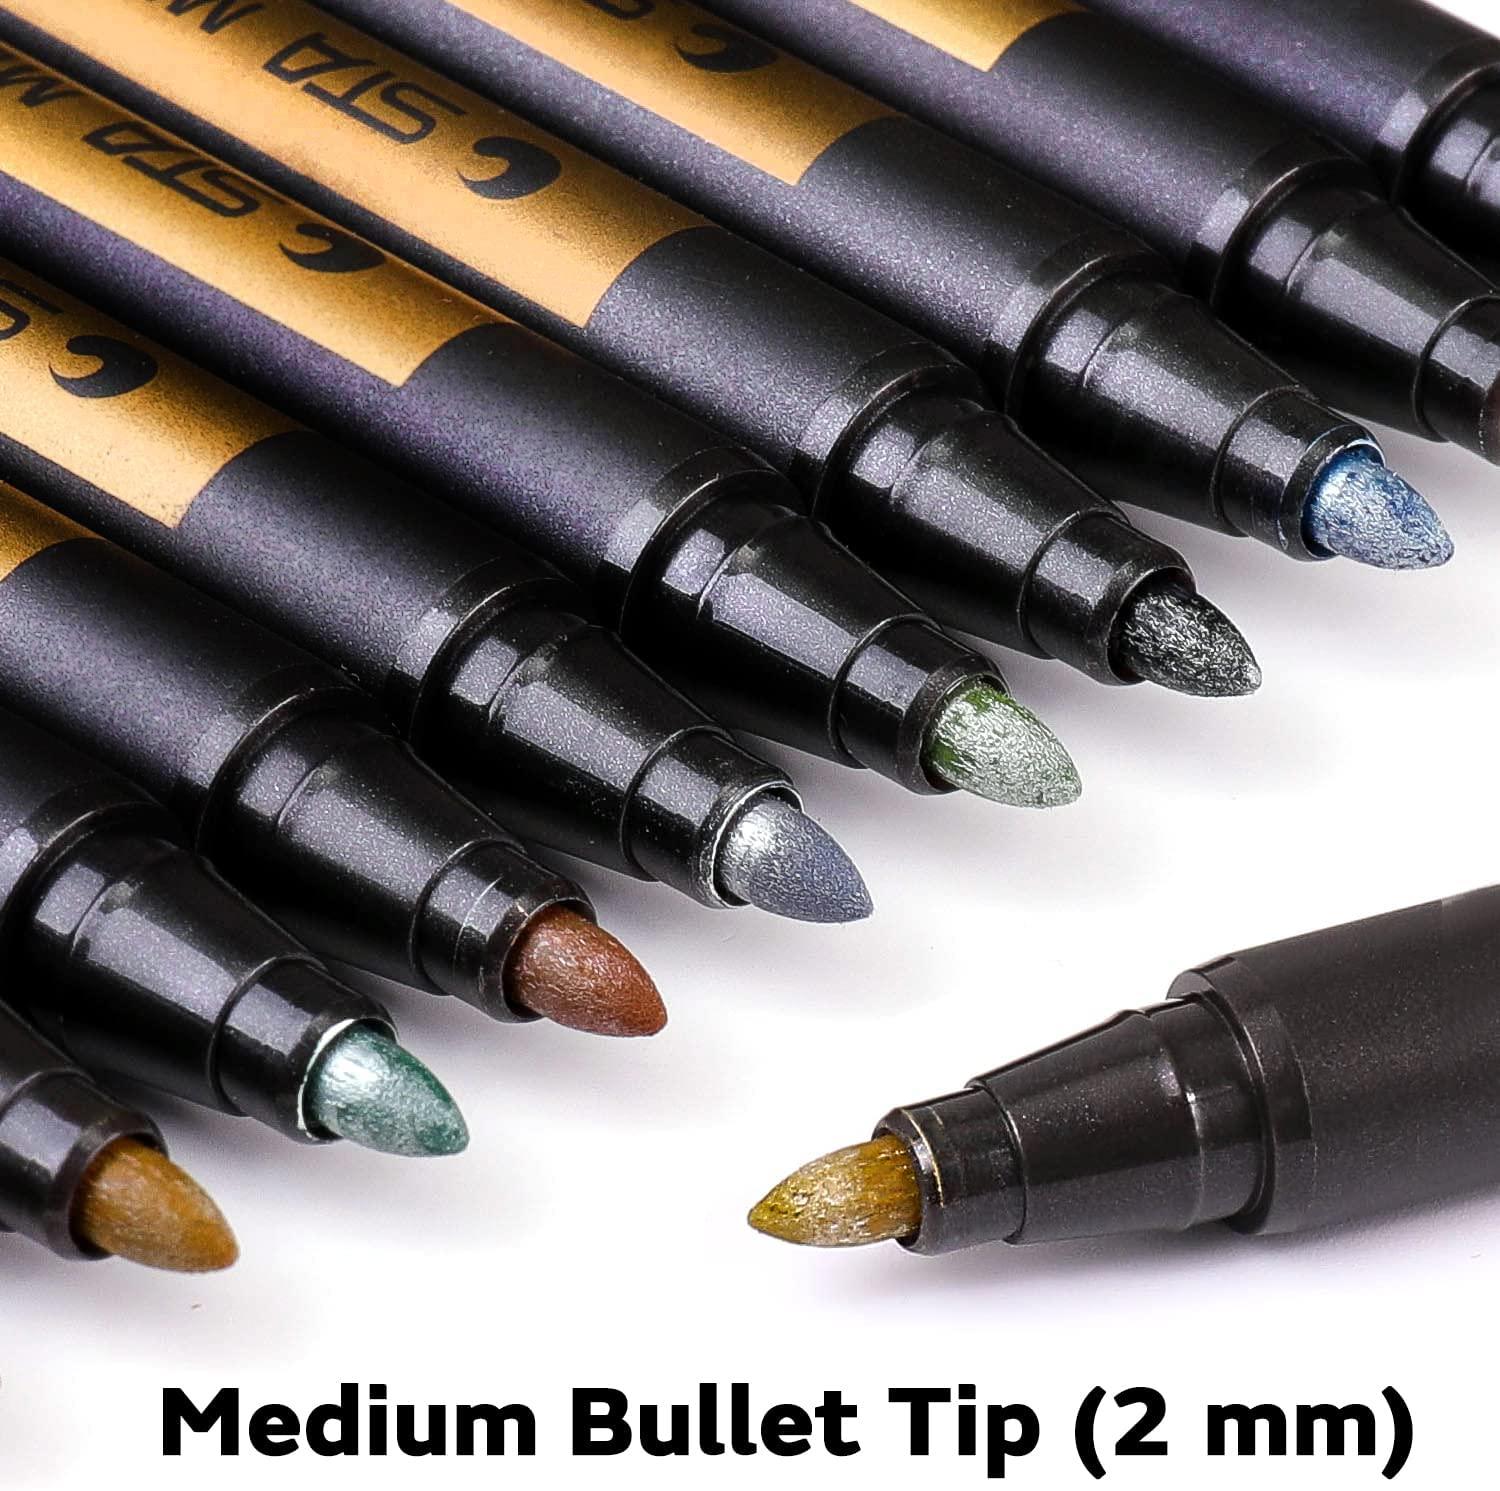 Dyvicl Gold Gel Pens, 05 Mm Extra Fine Pens Gel Ink Pens For Black